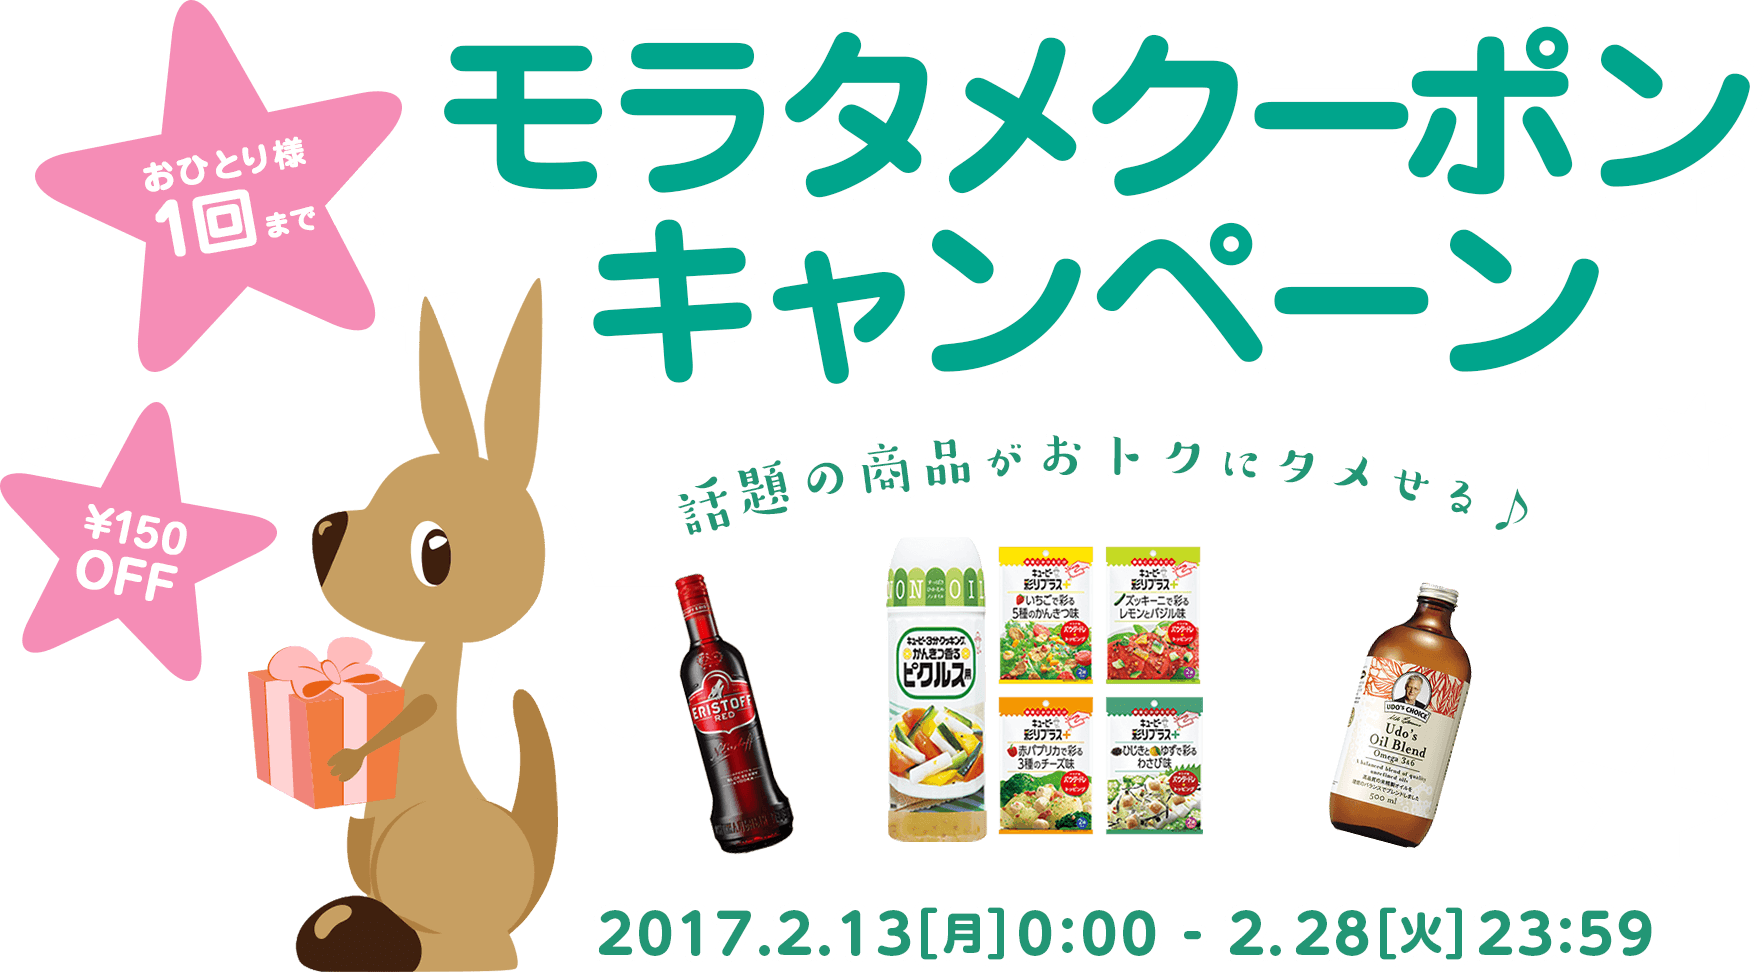 期間限定 150円OFFクポーンキャンペーン　2017.2.23(月)0:00-2.28(火)